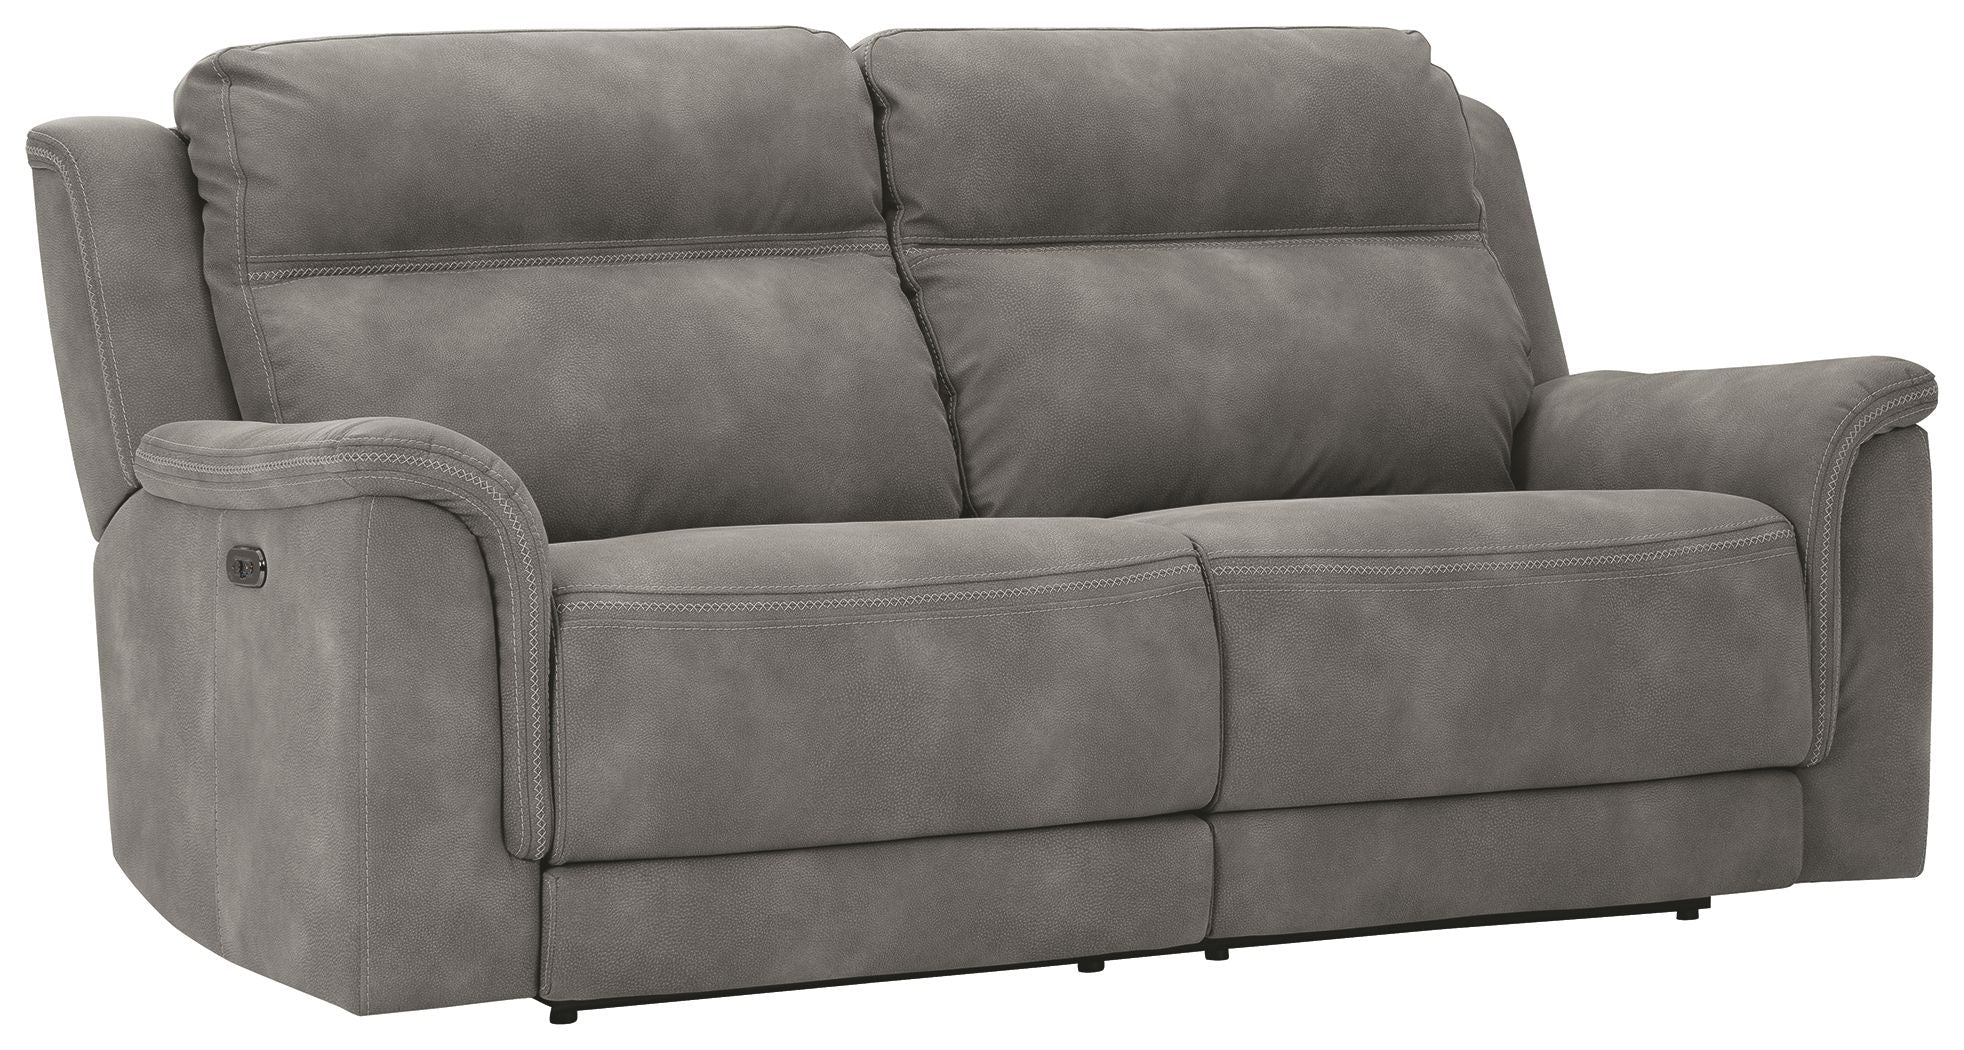 Next-Gen - Power Sofa